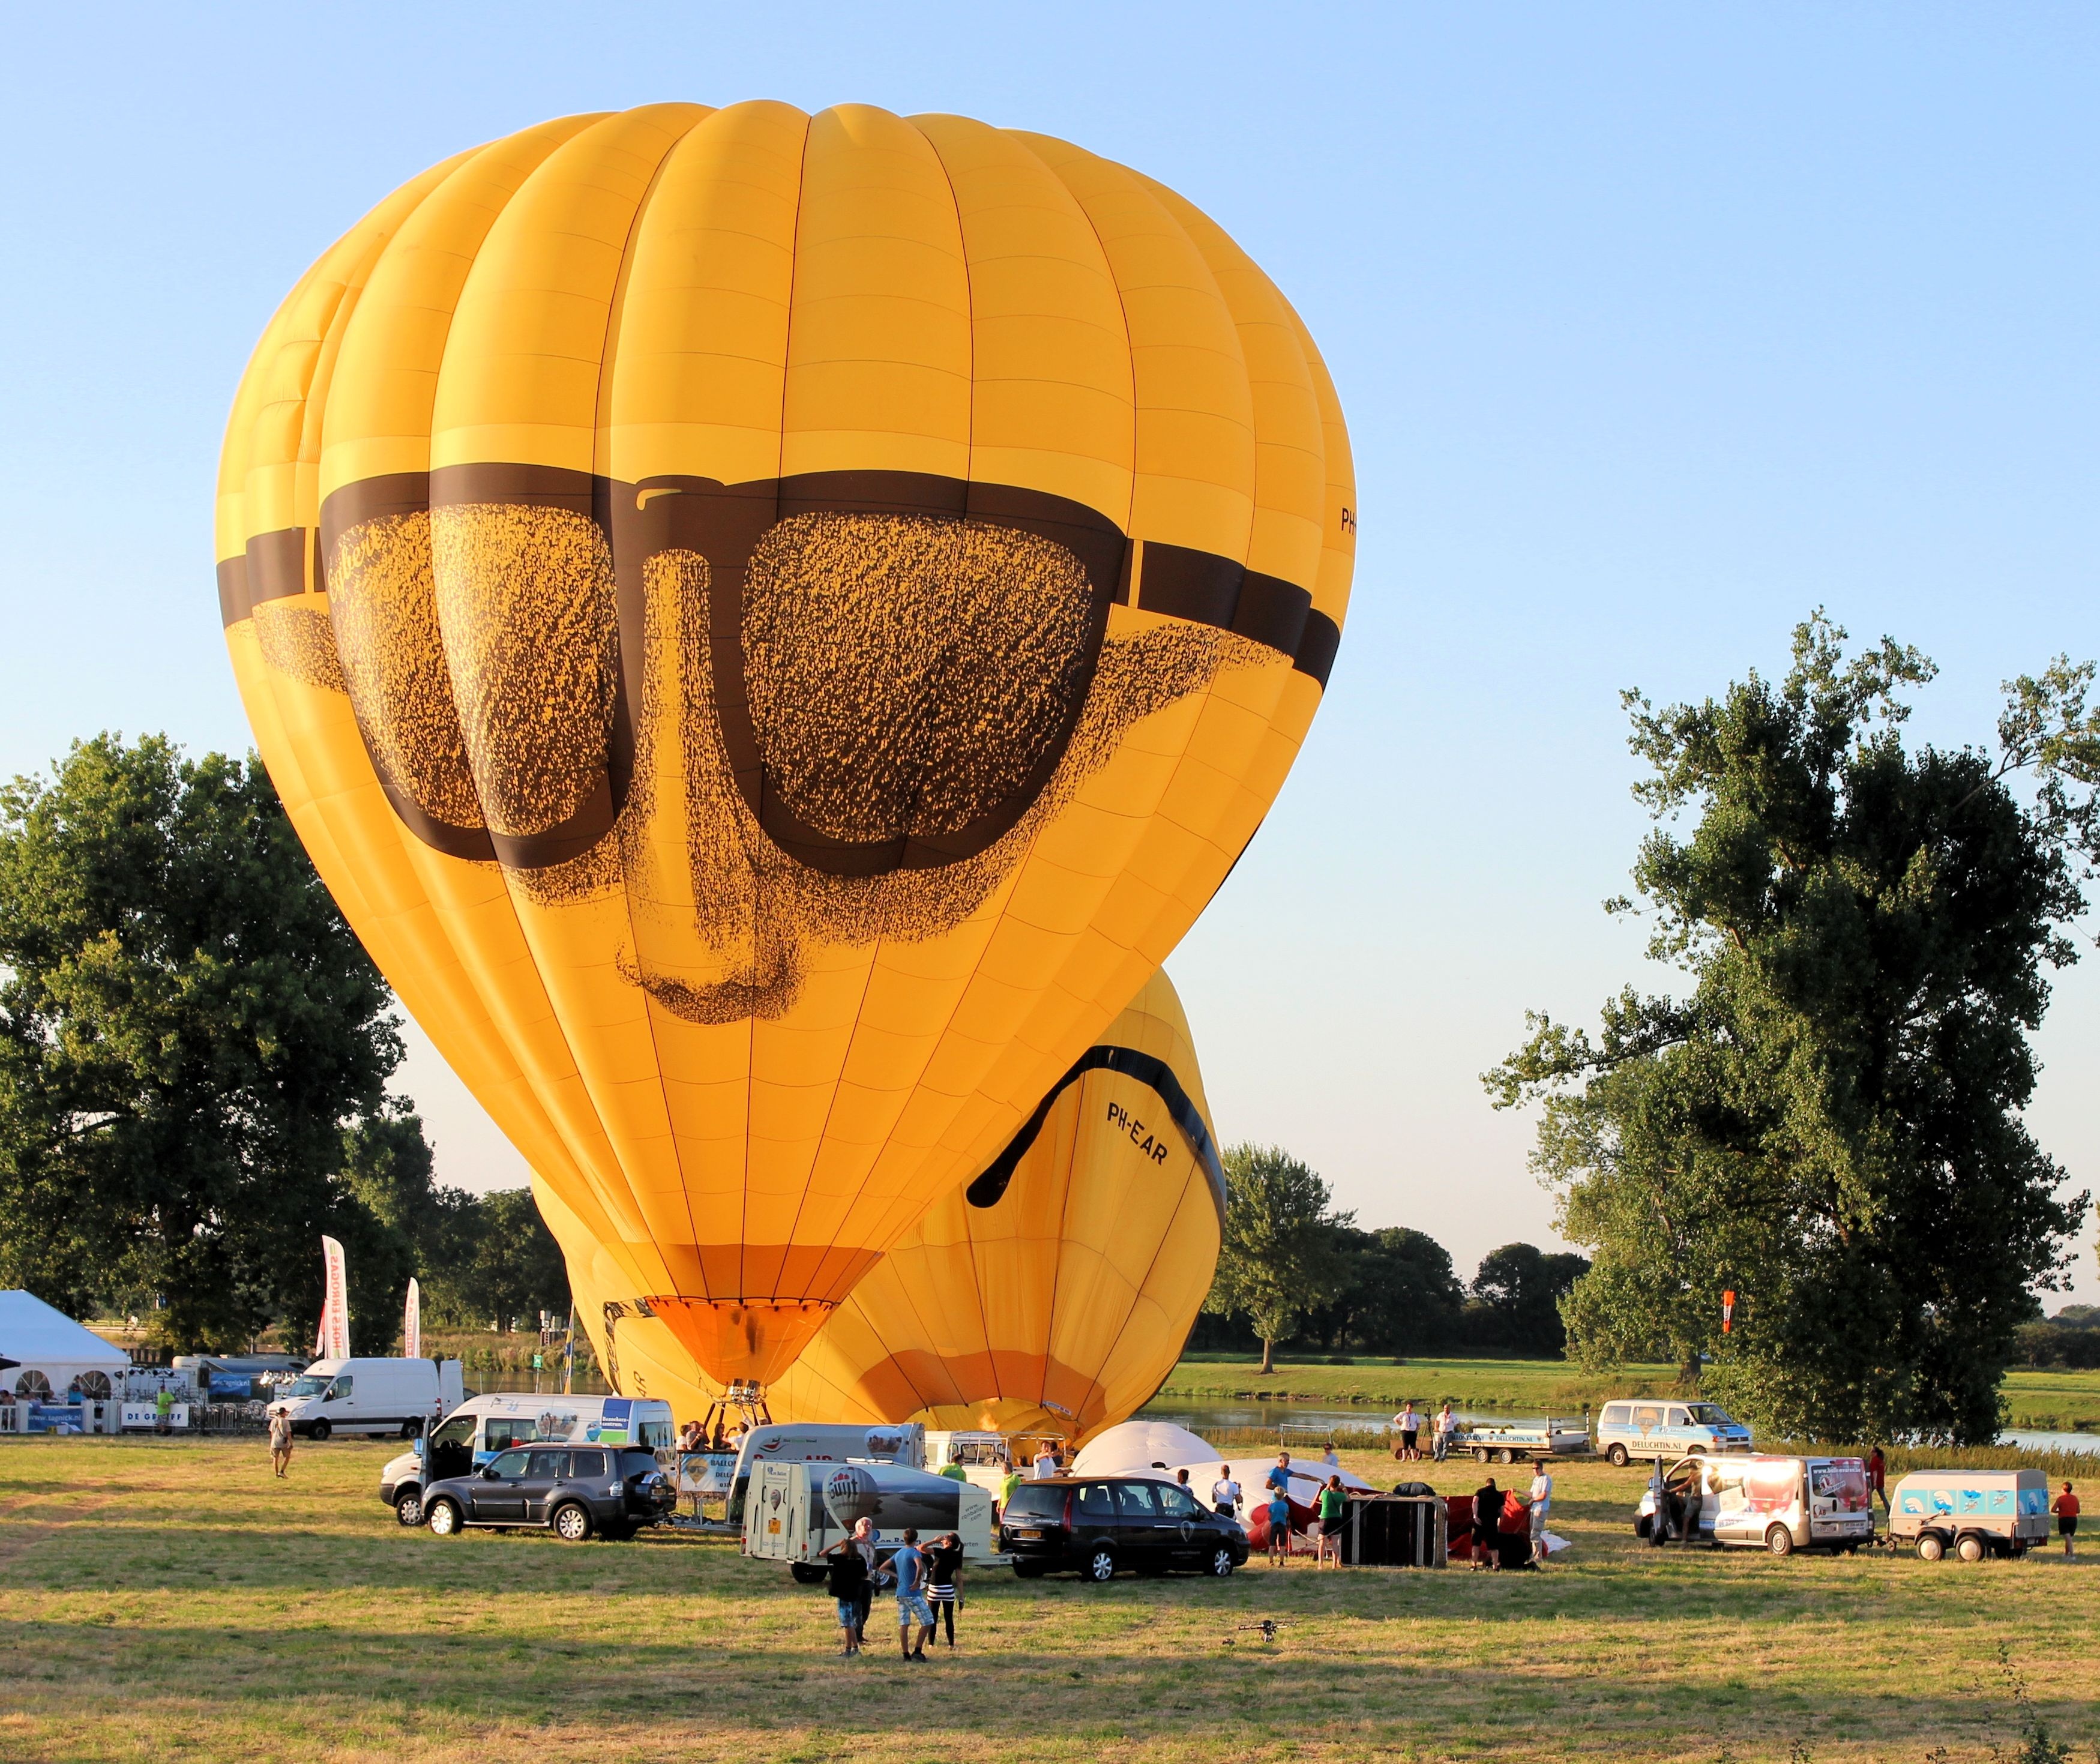 Аэростат объемом 2000 метров. Аэростат монгольфьер. Воздушный шар с корзиной. Необычные воздушные шары. Воздушные шары аэростаты.